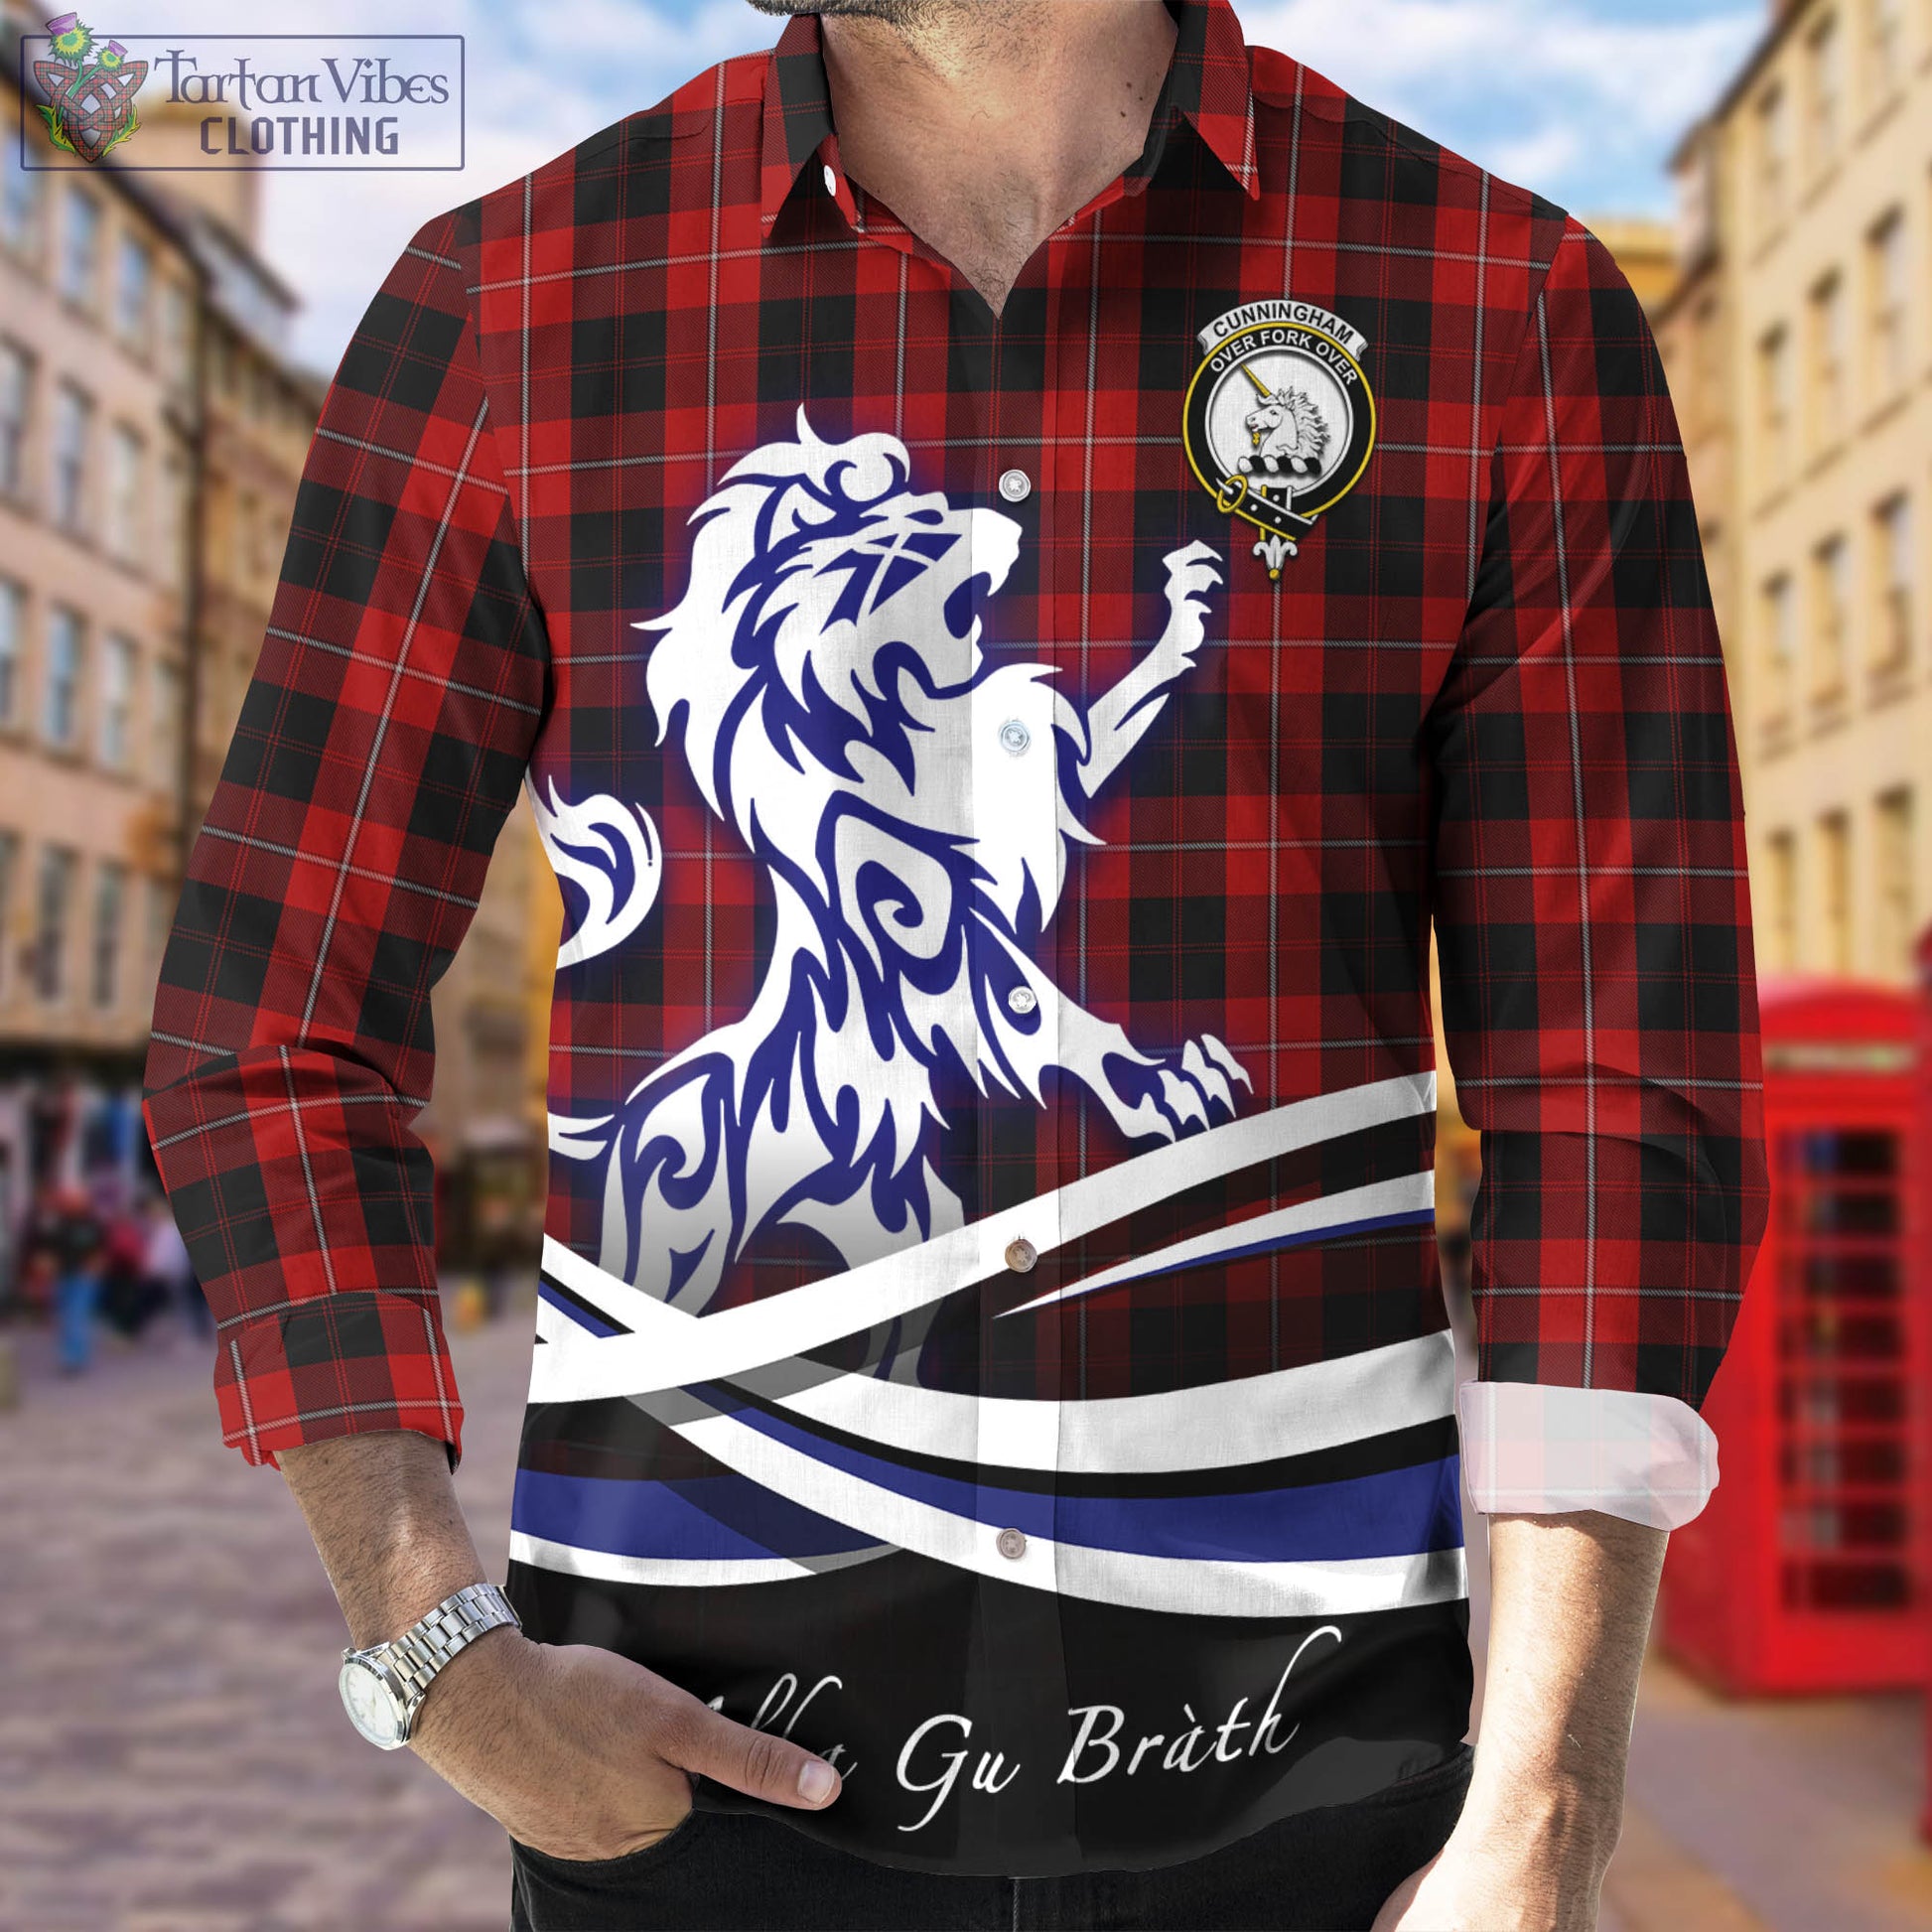 cunningham-tartan-long-sleeve-button-up-shirt-with-alba-gu-brath-regal-lion-emblem